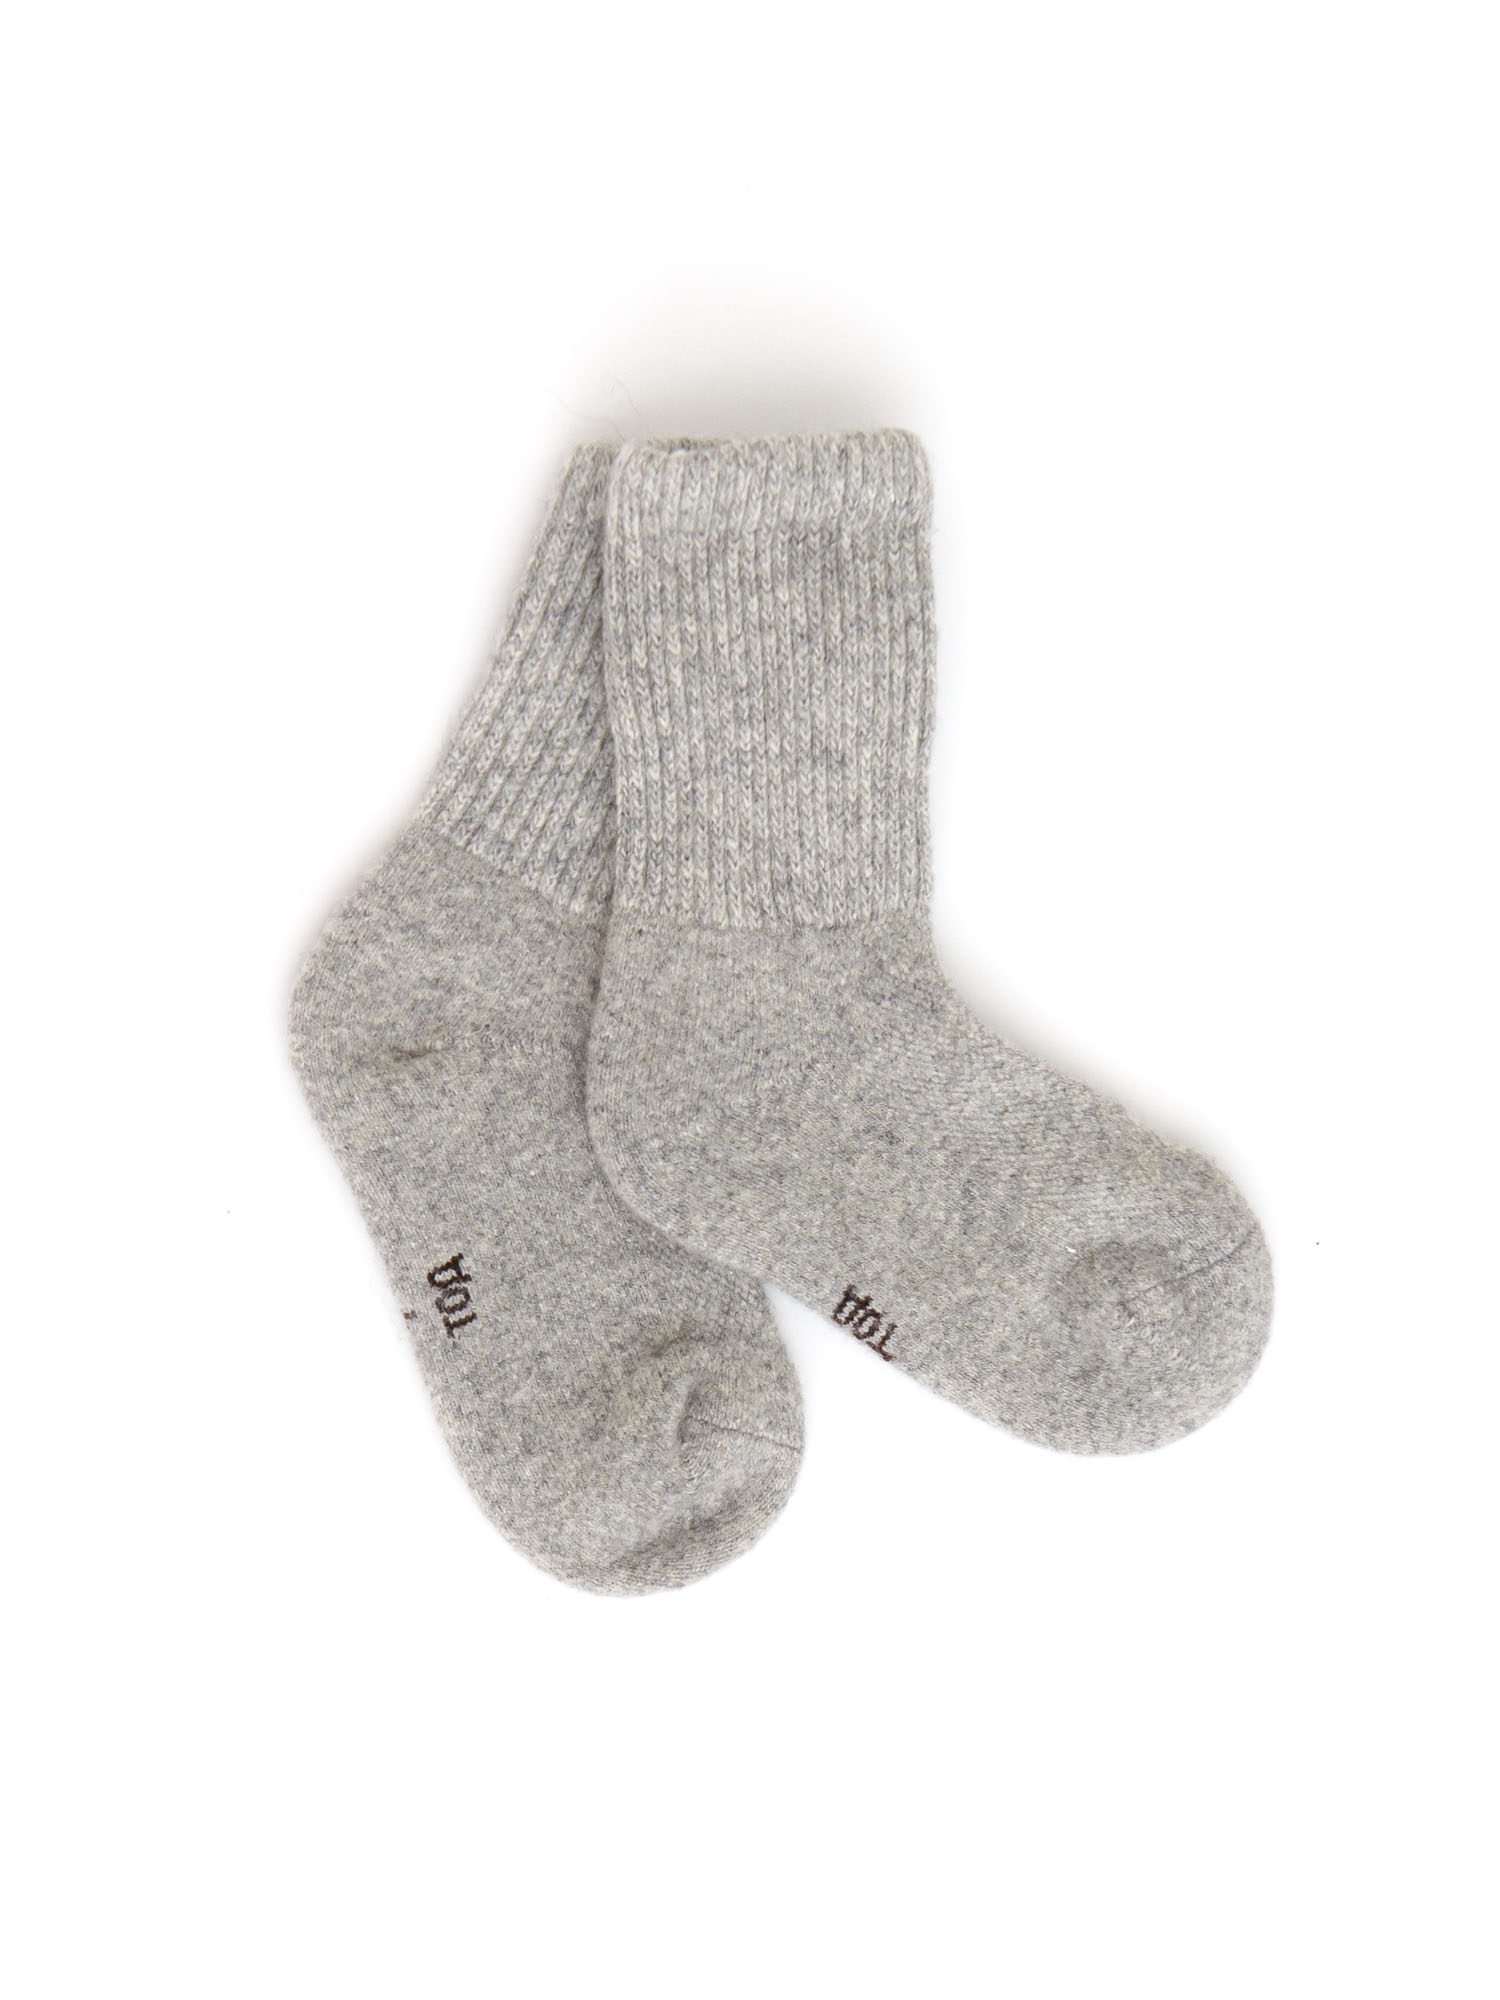 Детские носки из монгольской шерсти 4с ТОД ОЙМС ХХК, цвет серый, размер 4 (16-18 см) - фото 1